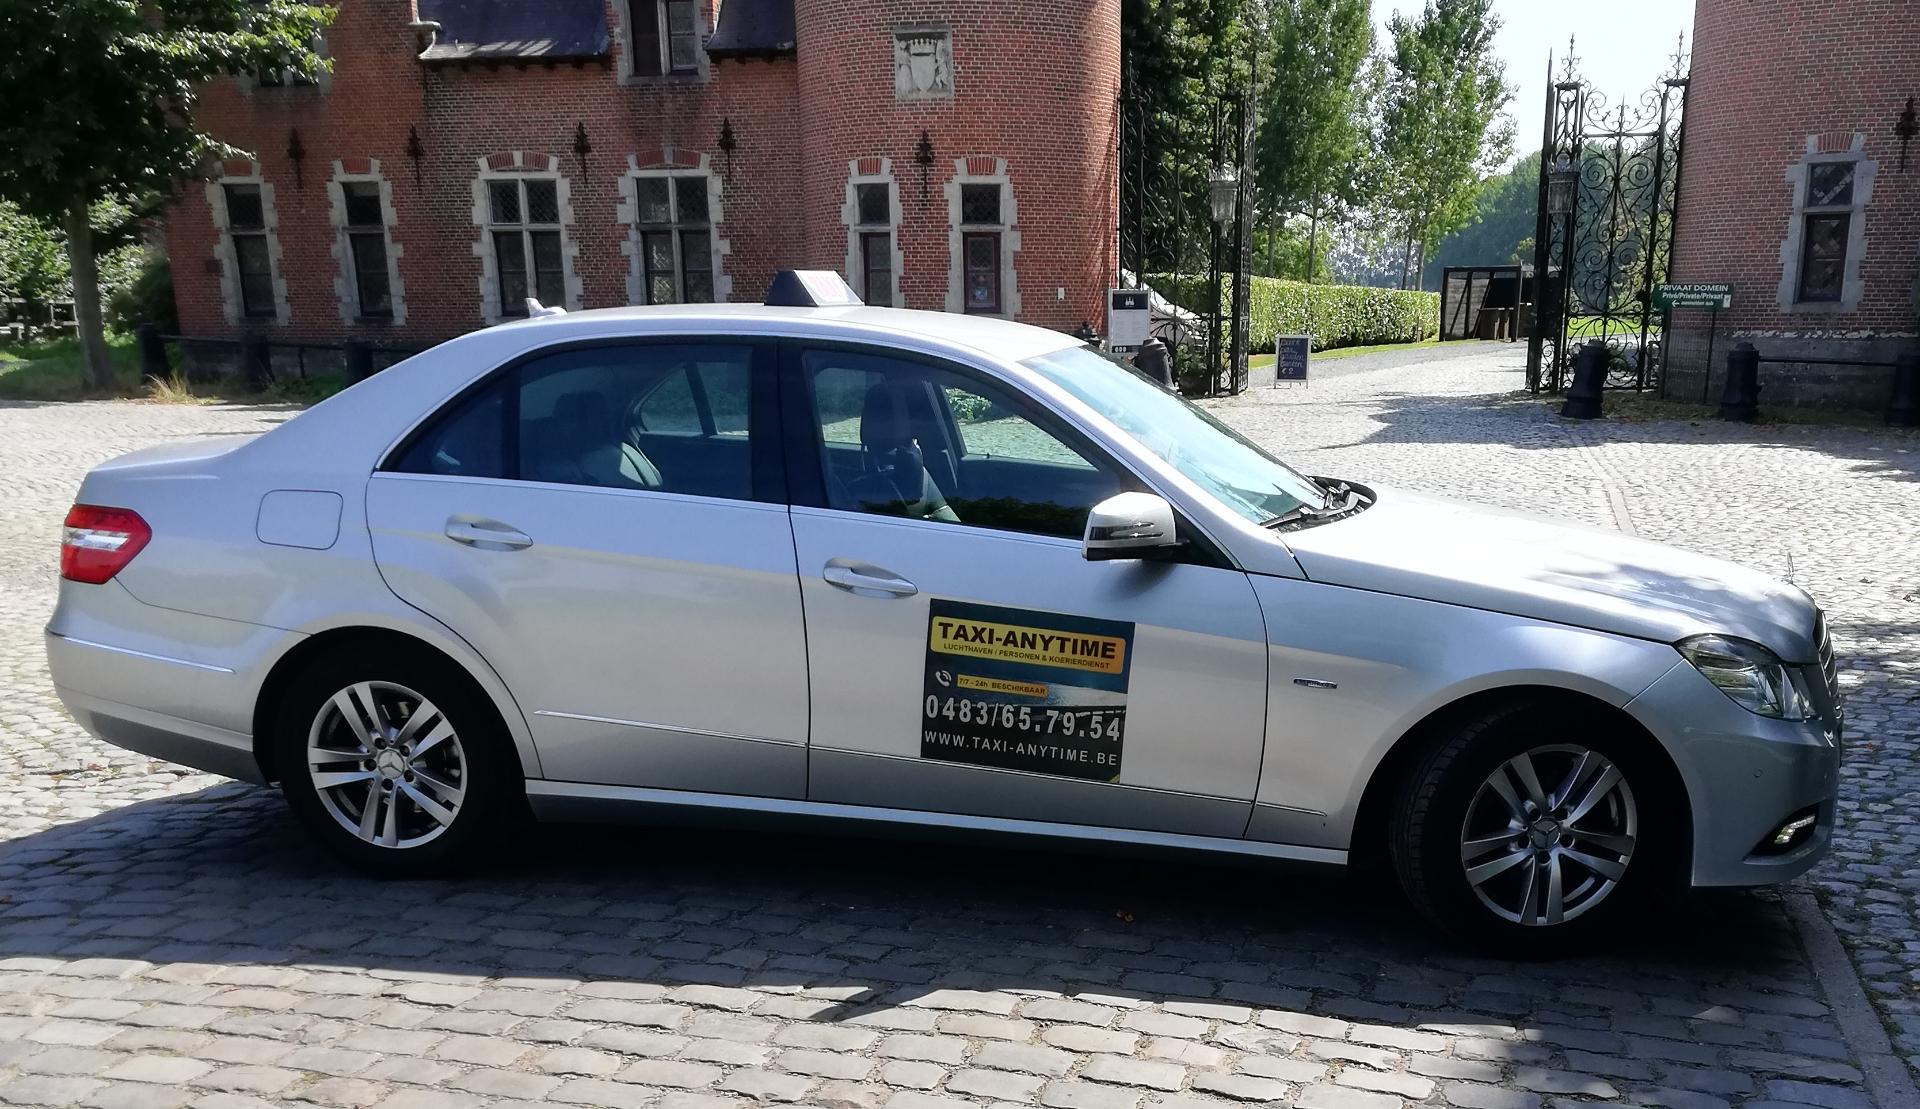 luxe-autoverhuurders Mechelen Taxi-Anytime